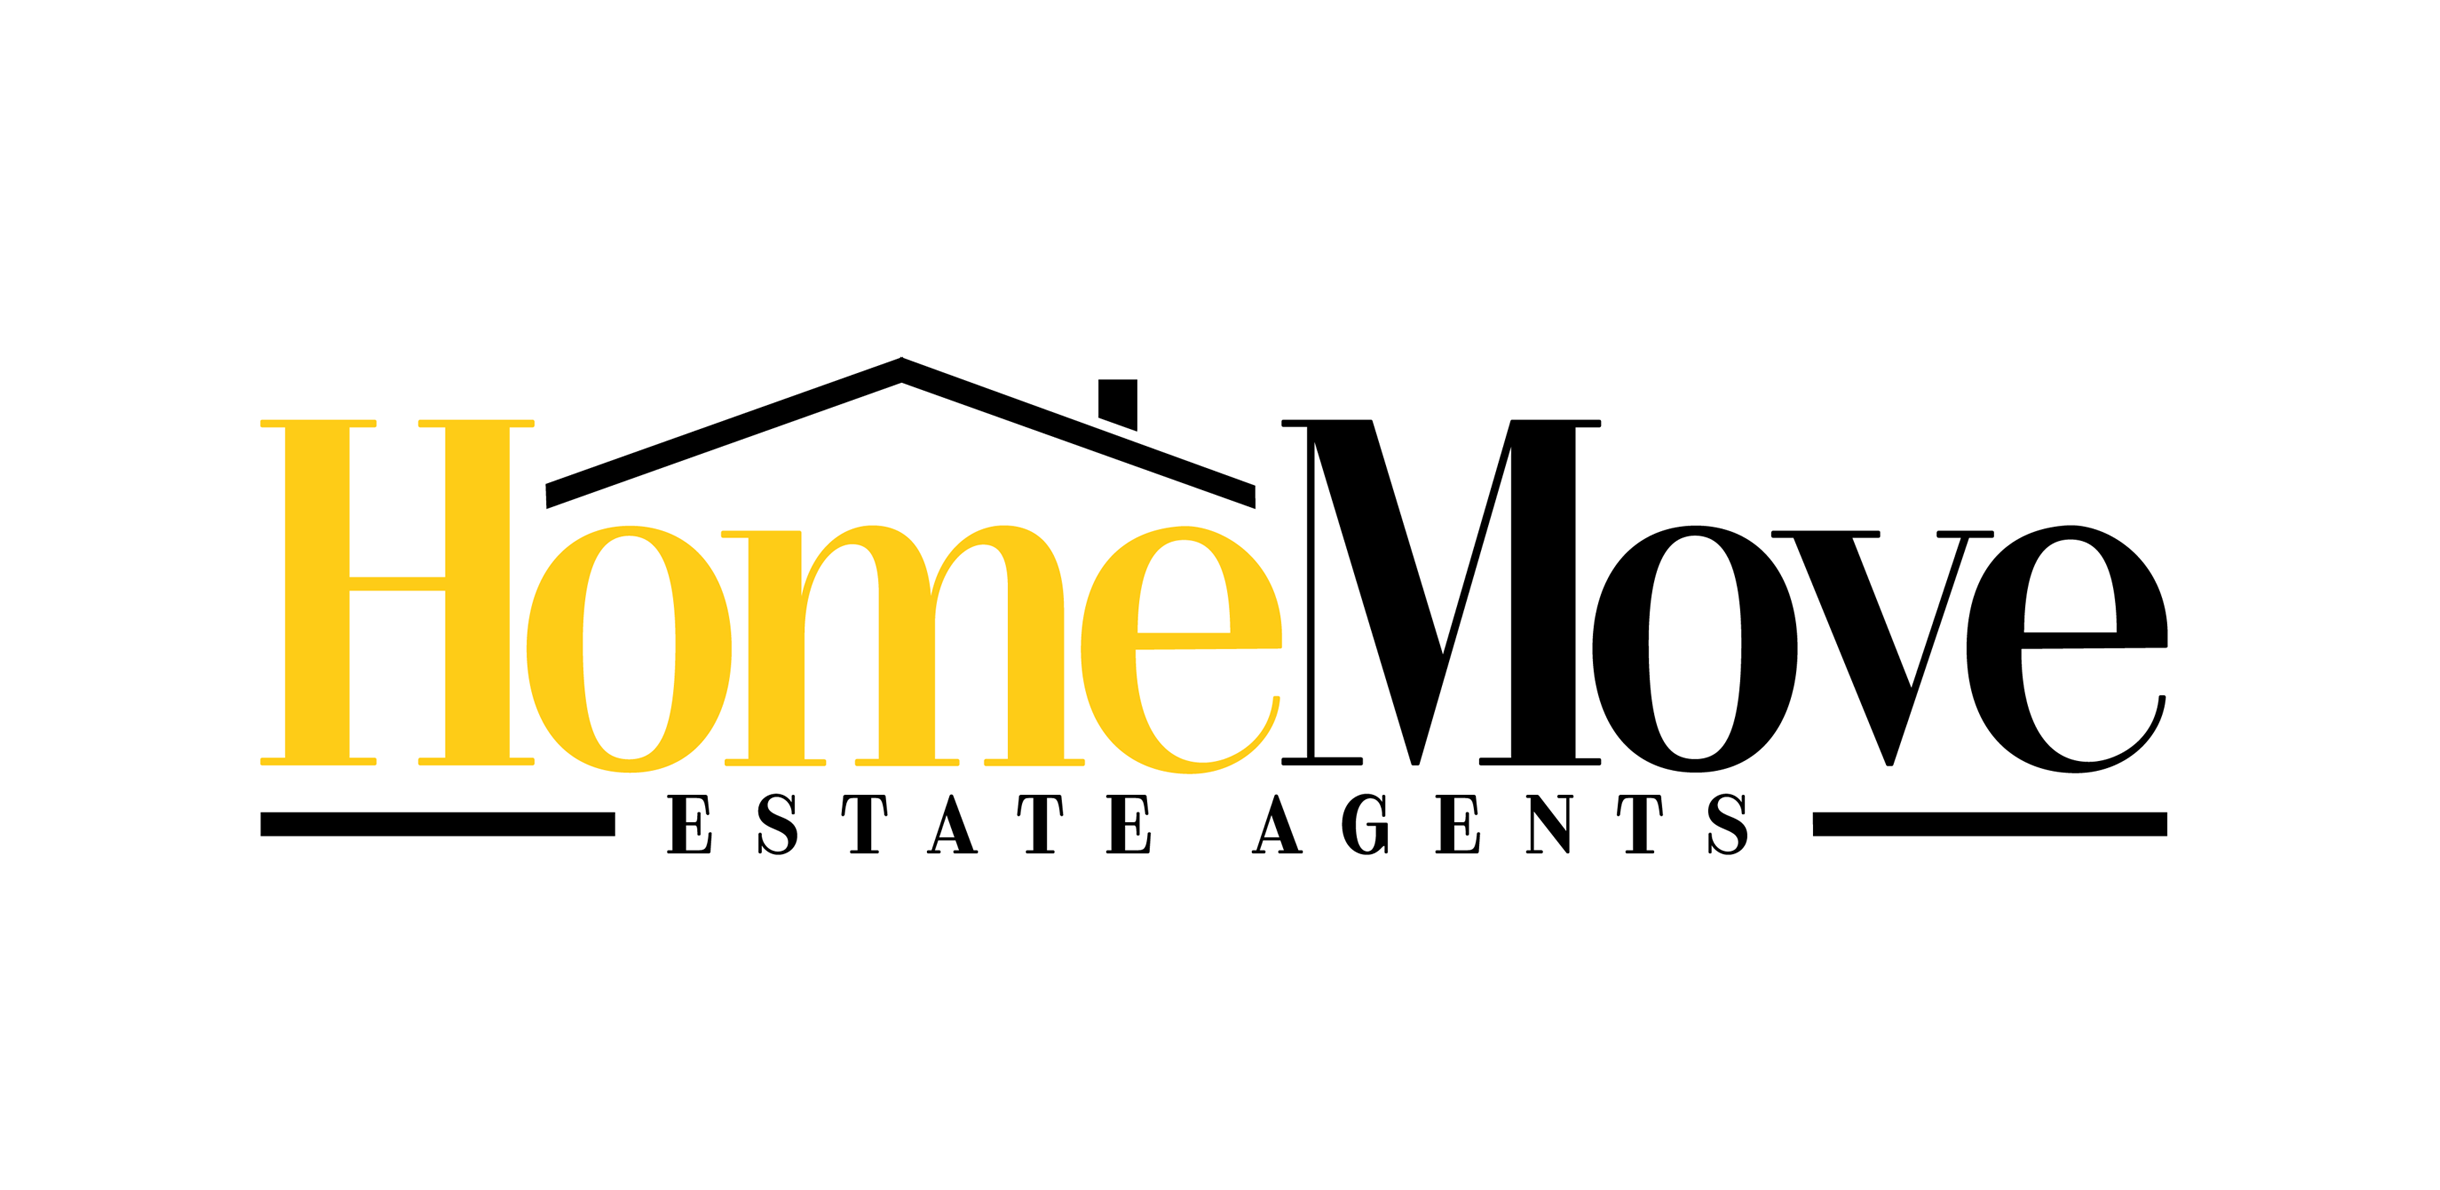 Home Move Estate Agents